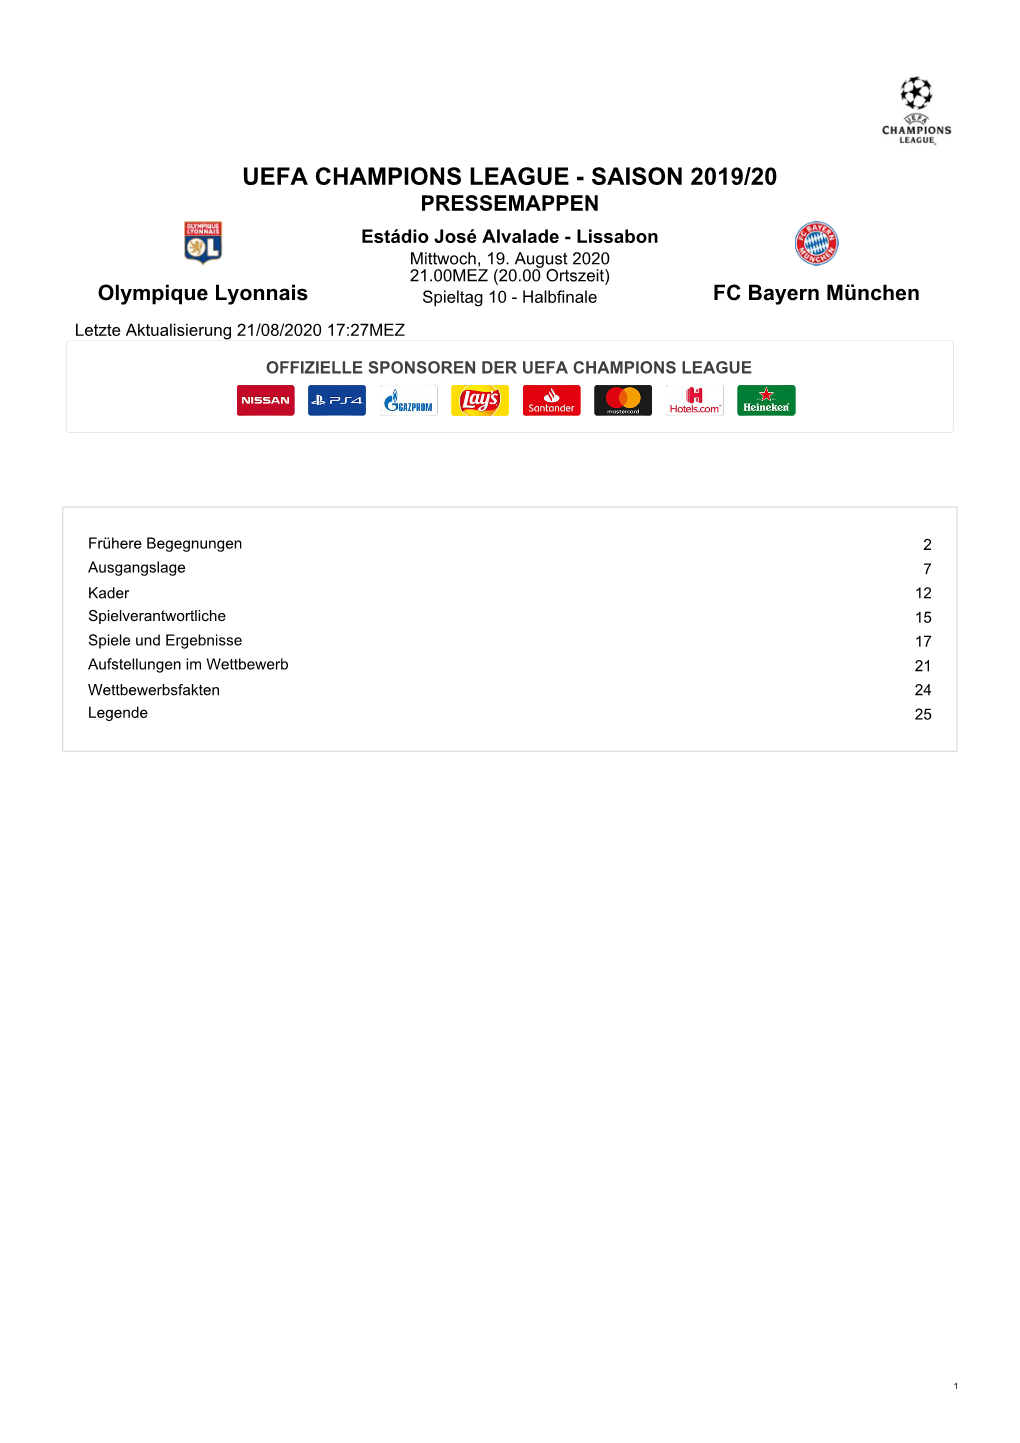 Bayern München Letzte Aktualisierung 21/08/2020 17:27MEZ